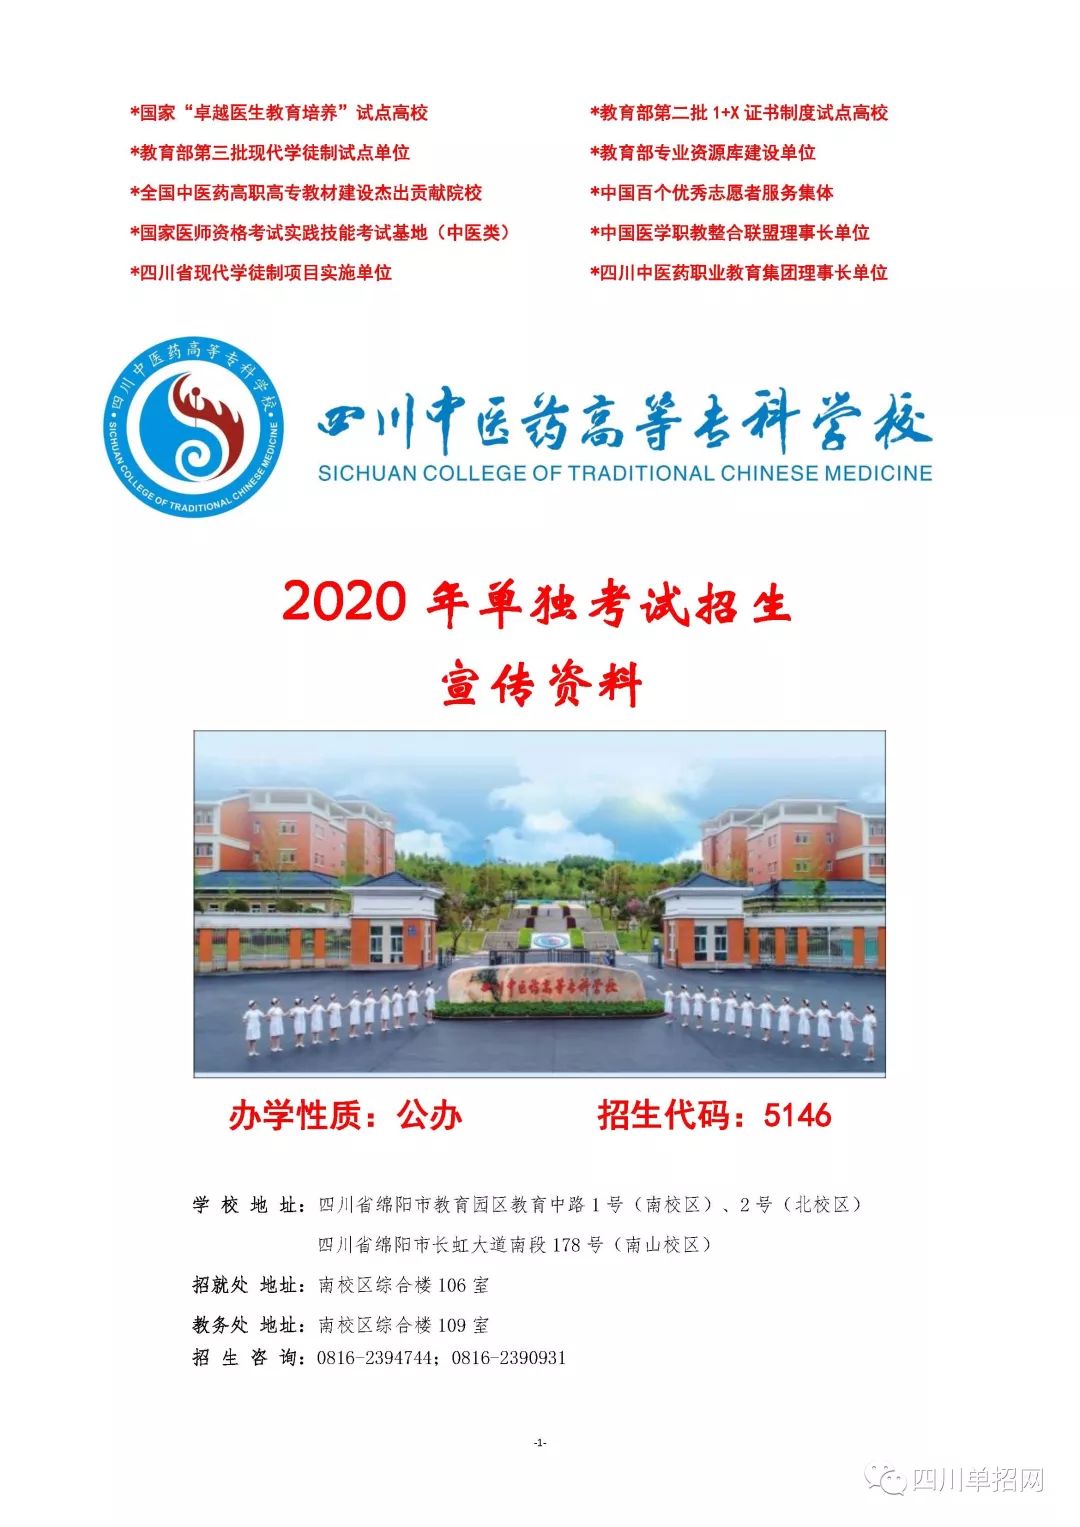 2020年四川中医药高等专科学校单招专业、单招学费等